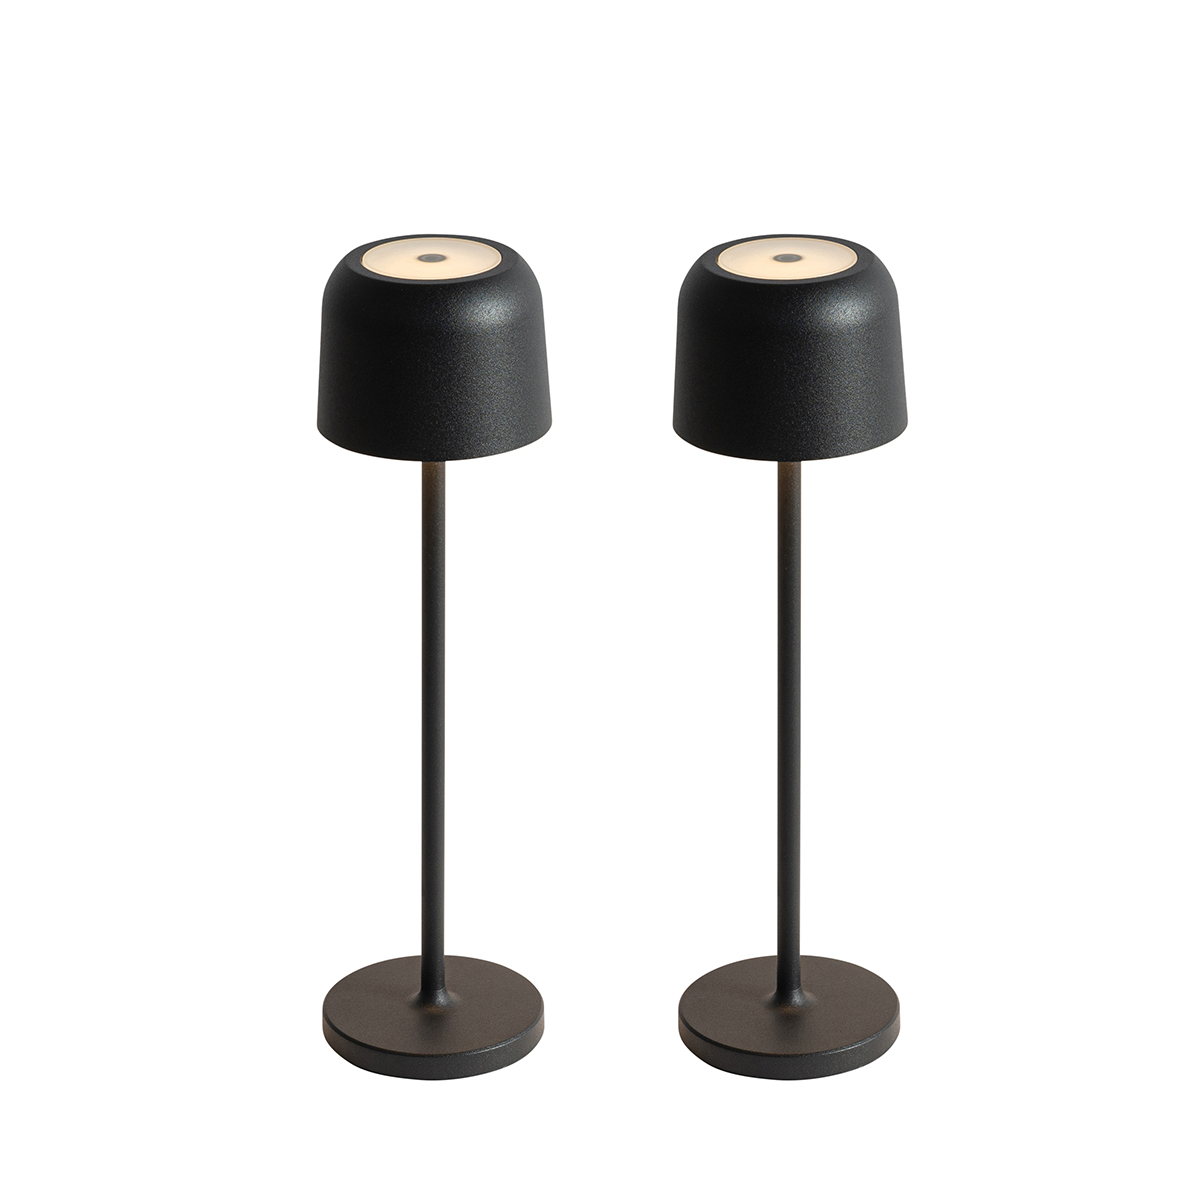 2 db Raika gomba asztali lámpa készlet fekete, beleértve a töltőállomást